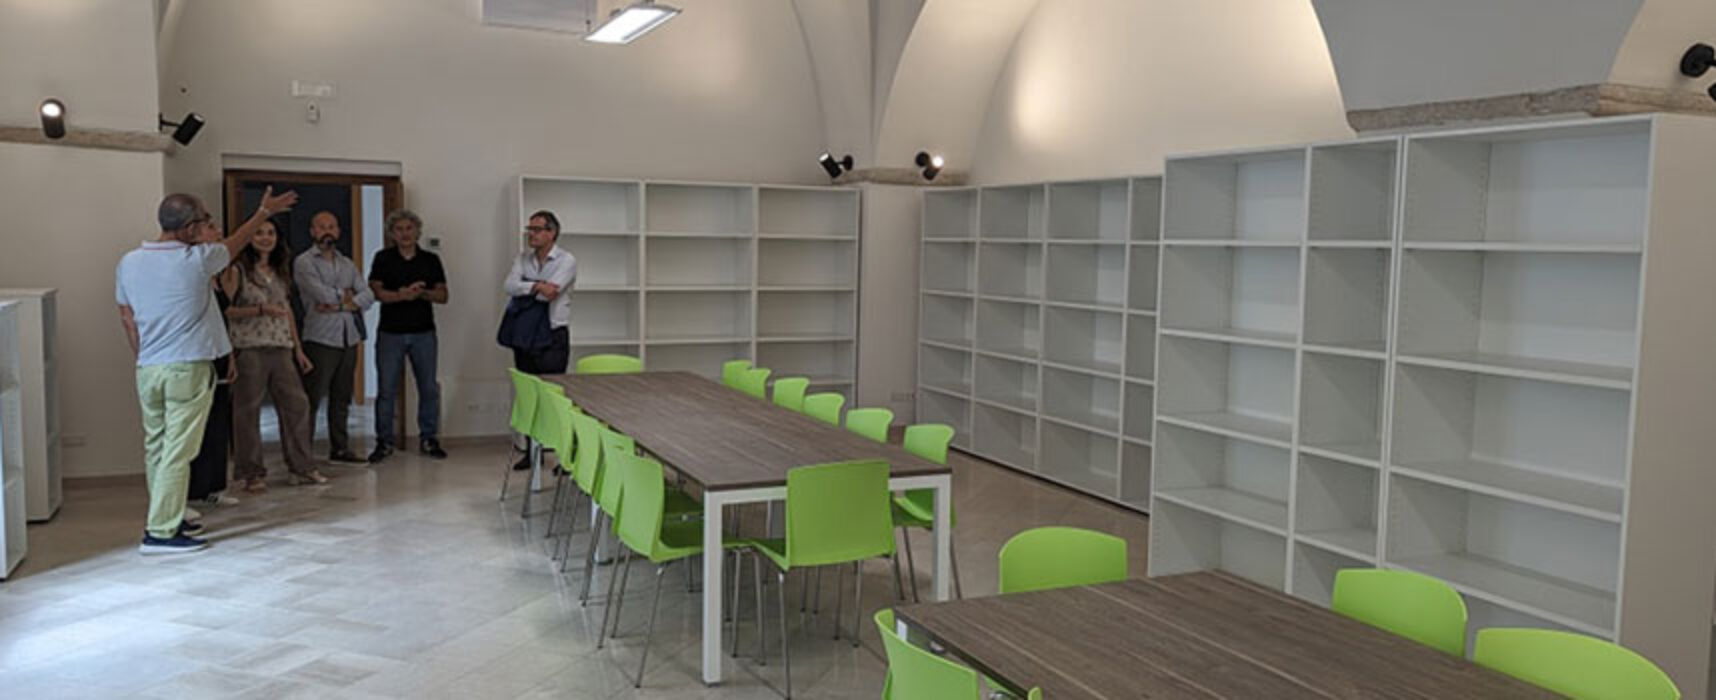 Lavori biblioteca, Angarano: “A settembre potremo tornare a frequentare polo culturale”